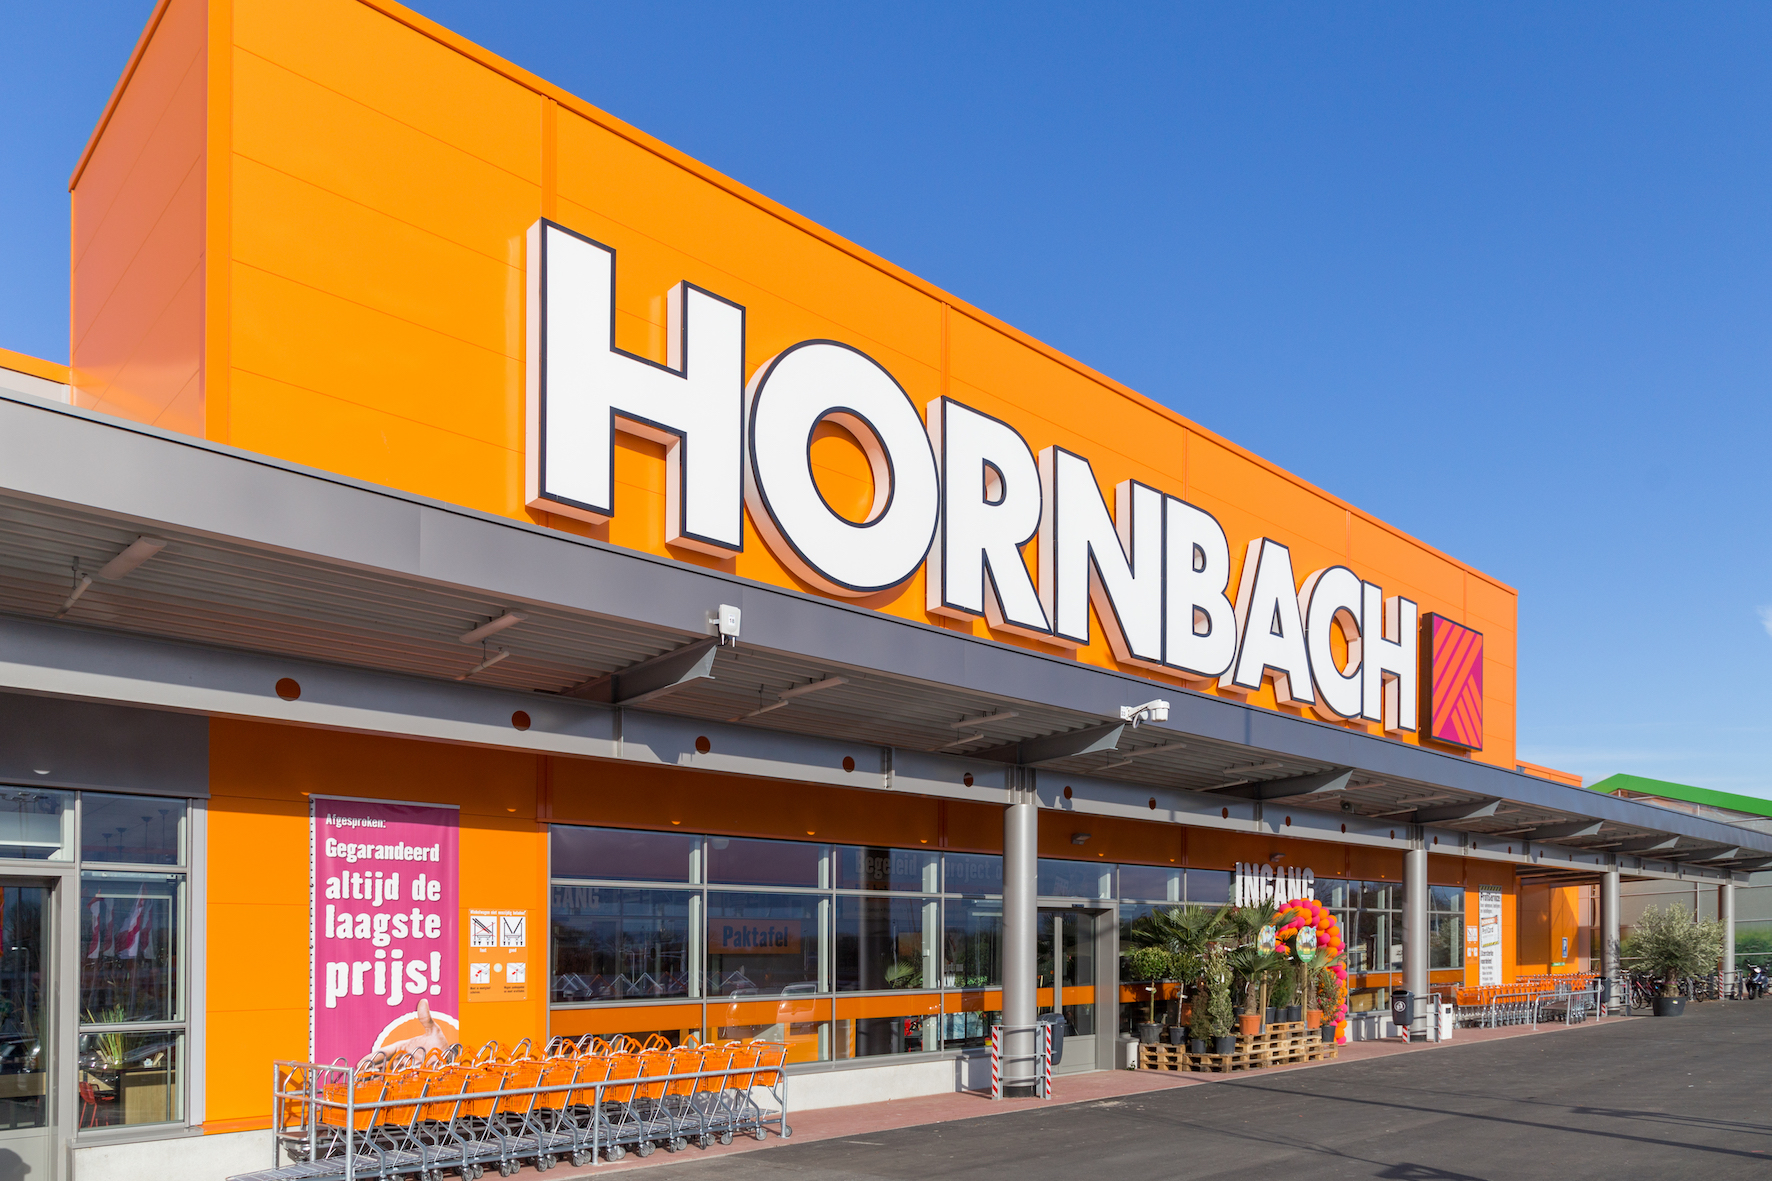 Walging naaien dood Grootste bouwmarkt van Overijssel vandaag geopend - Hornbach Newsroom